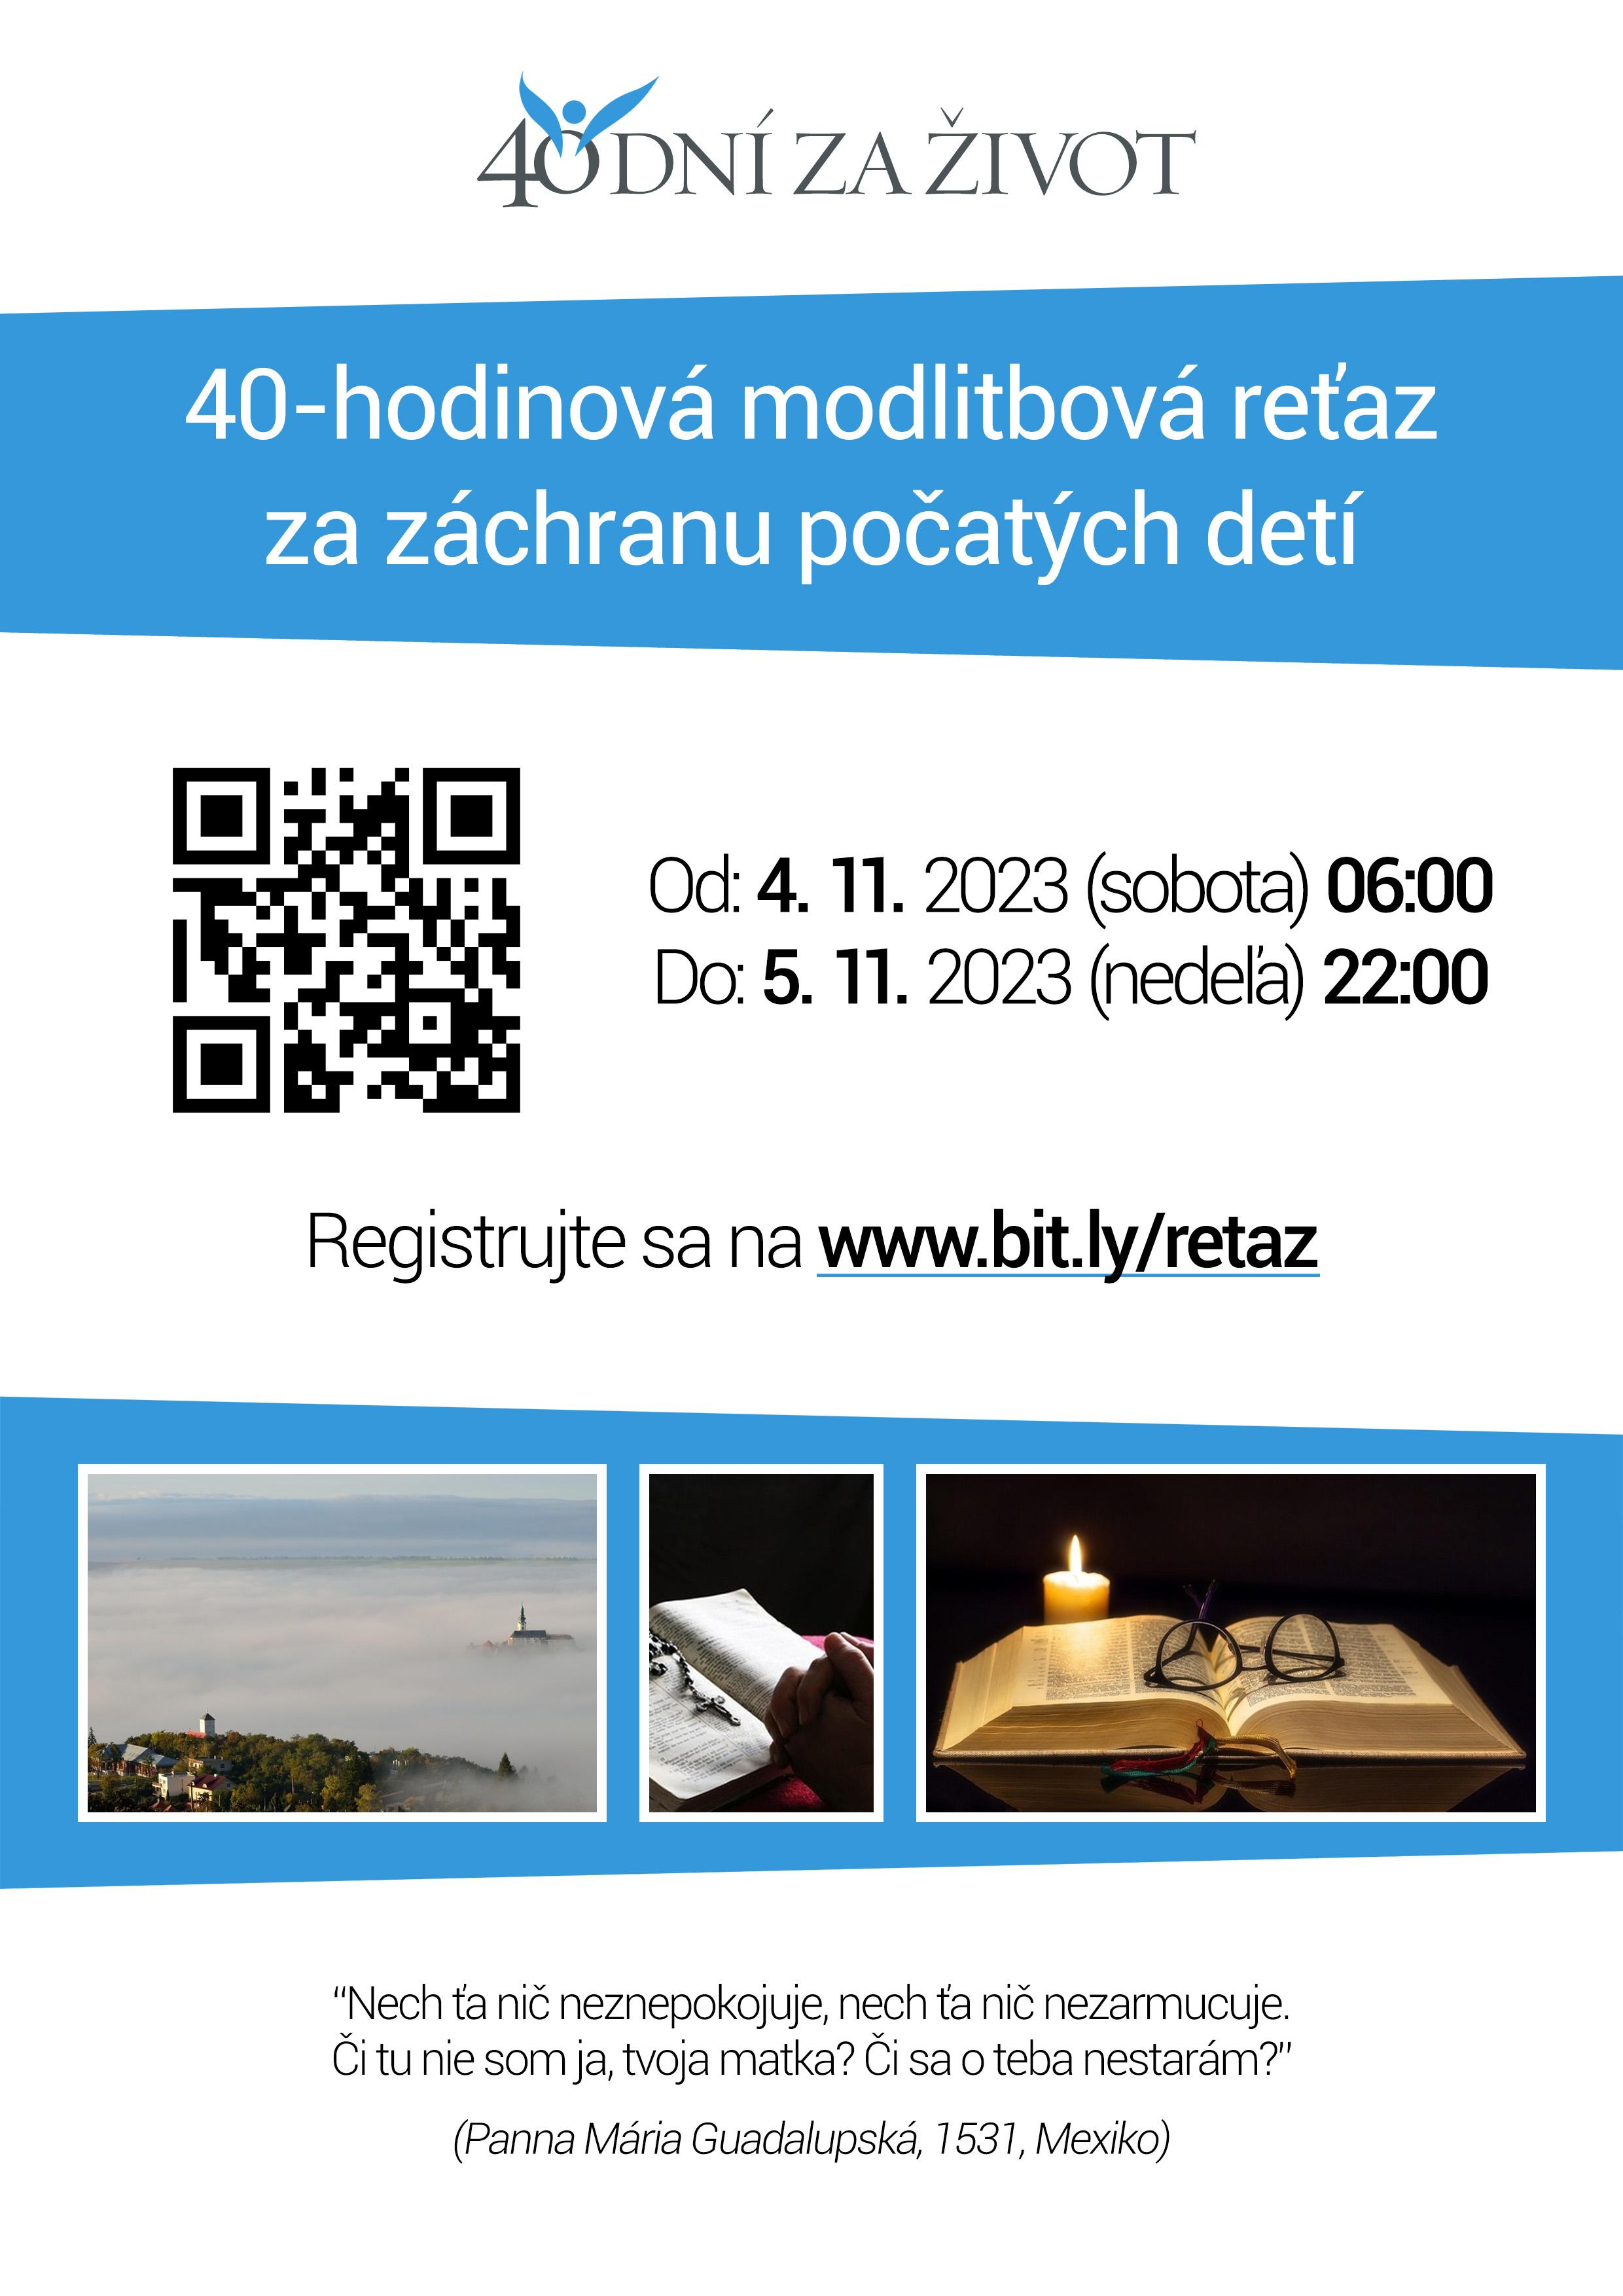 Bratislava, 40 dni za zivot, plagat